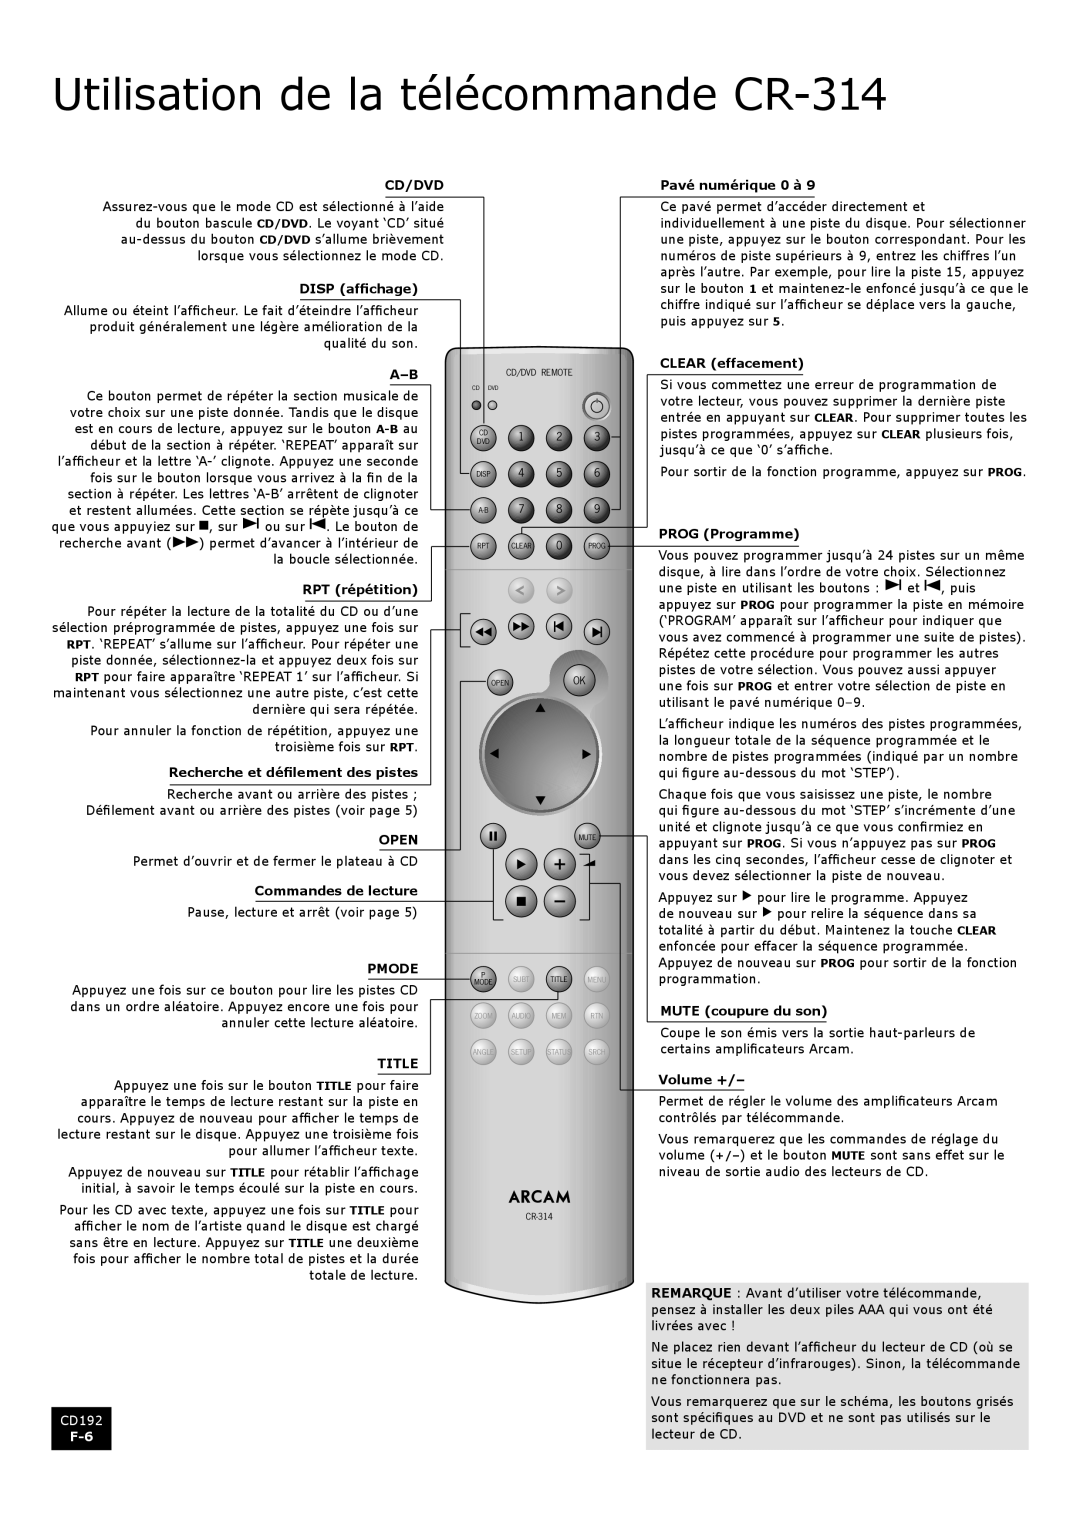 Arcam CD192 manual Utilisation de la télécommande CR-314 